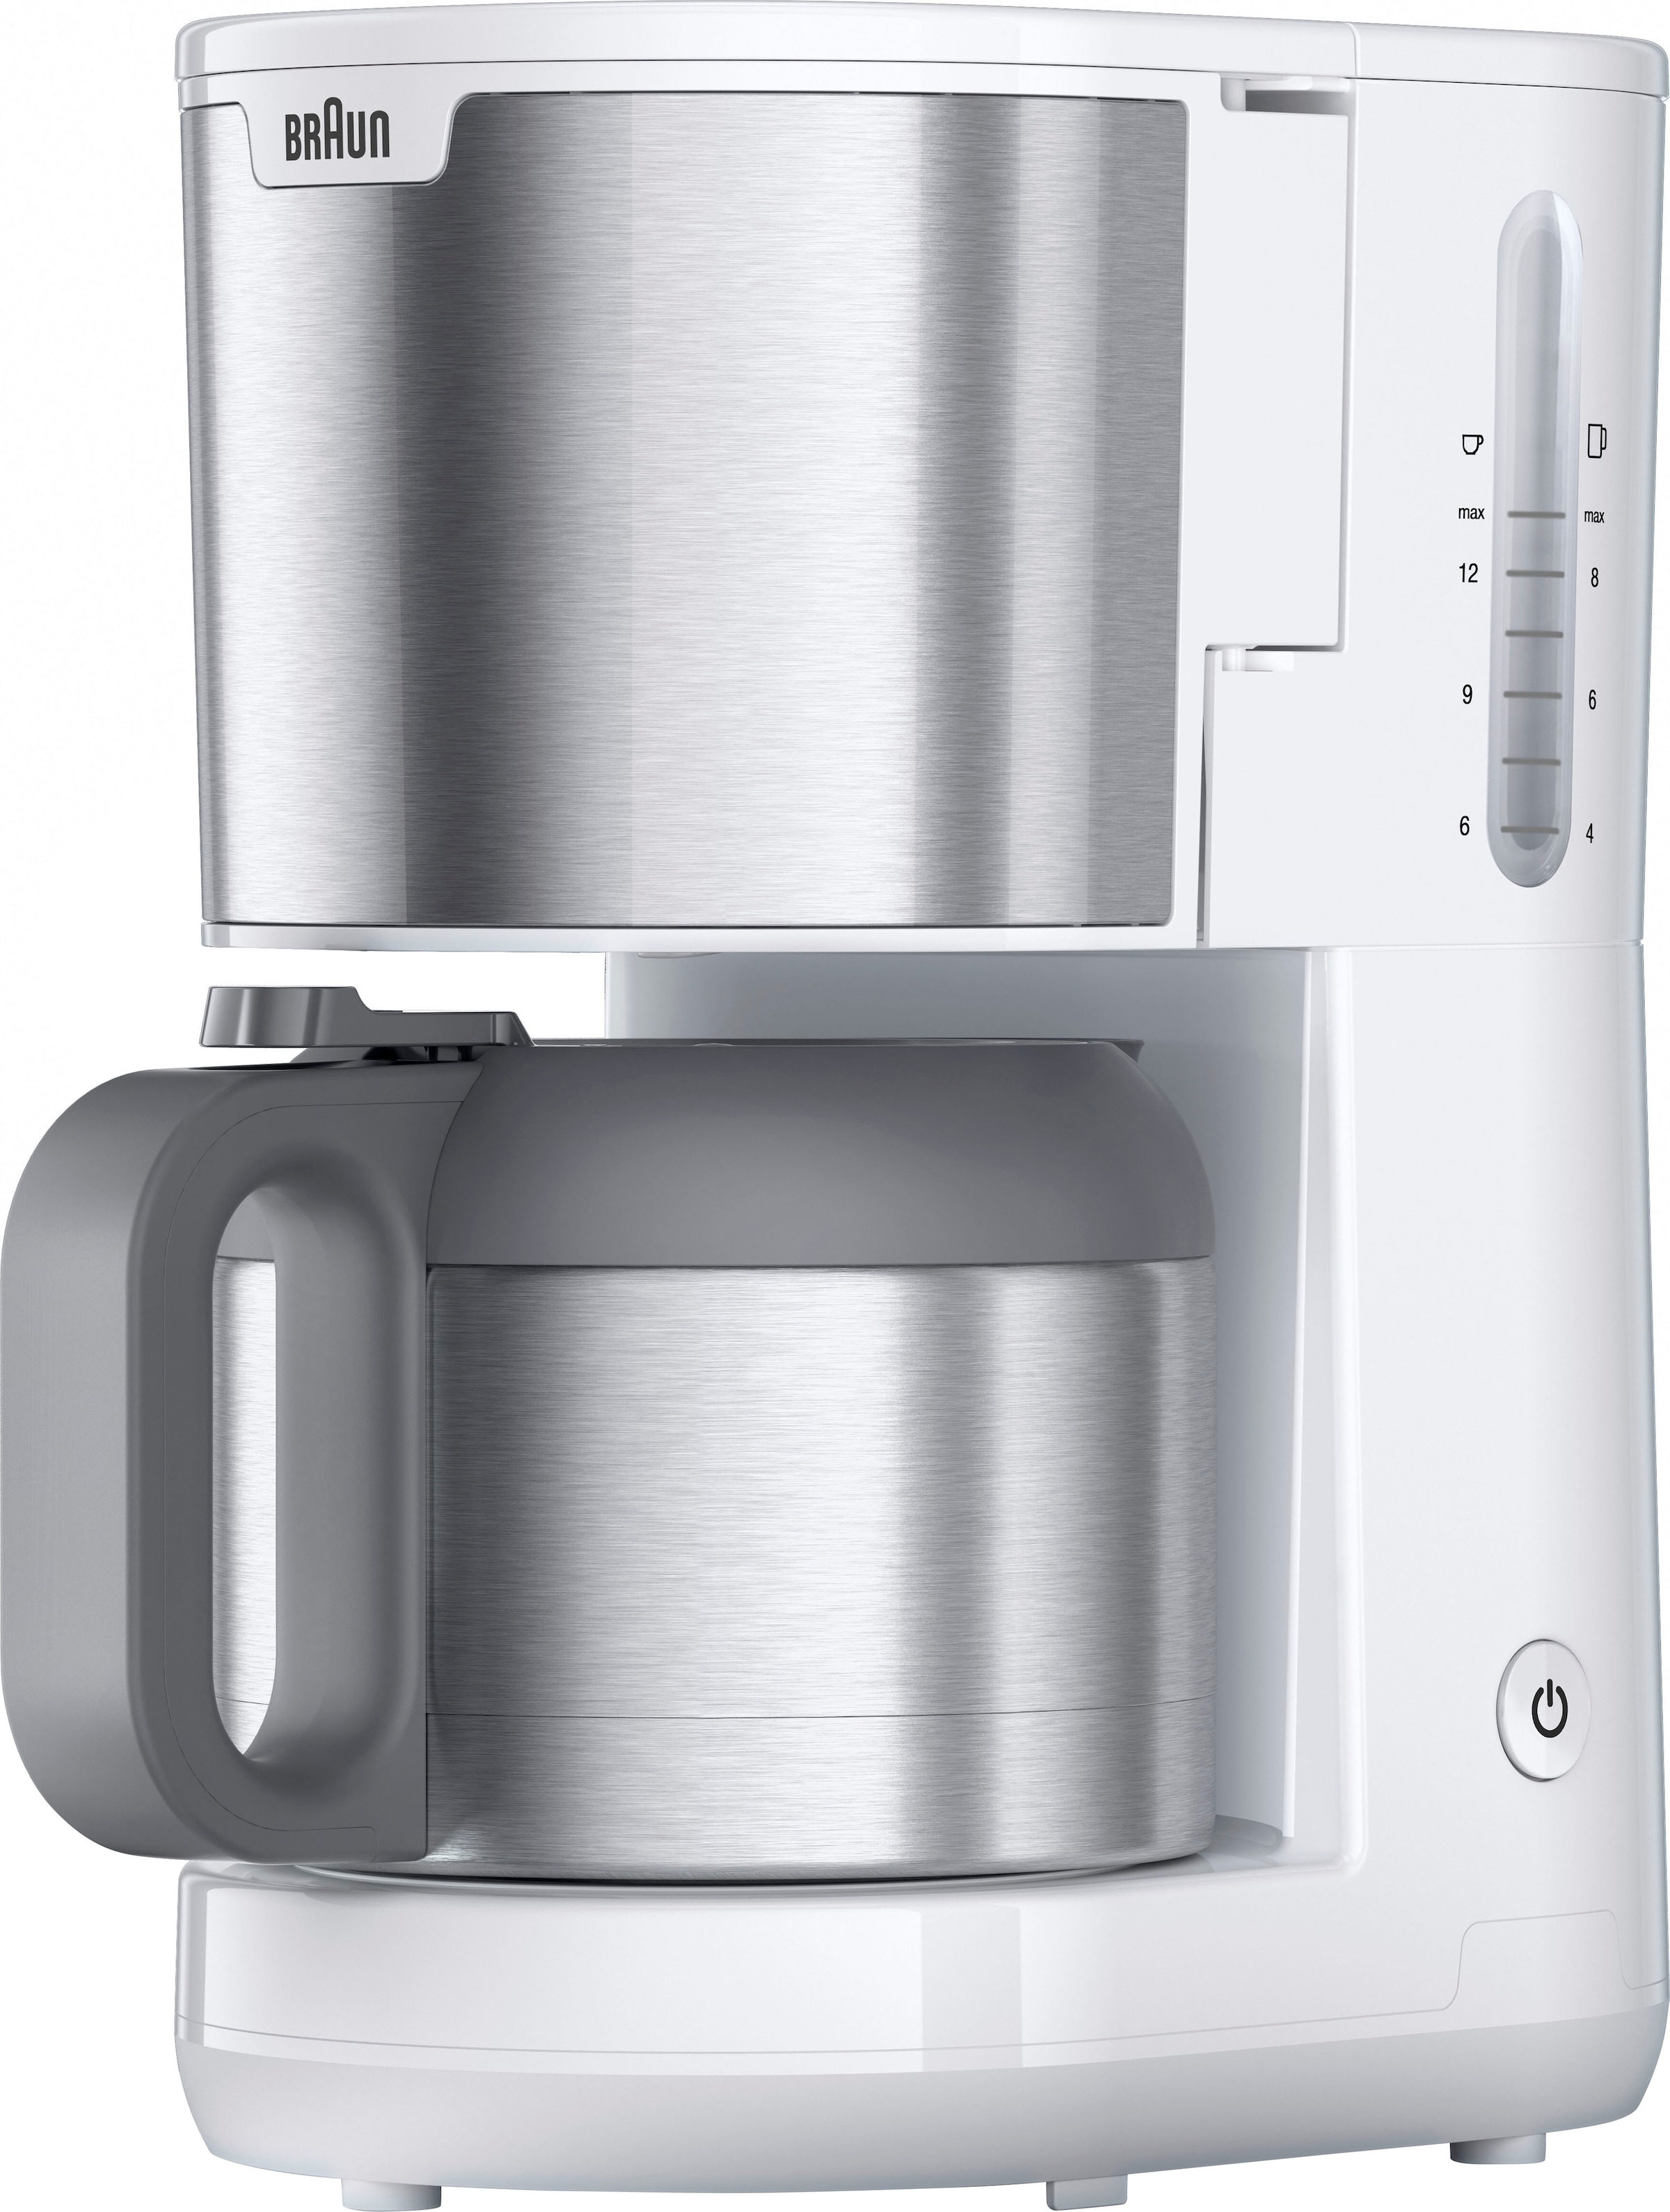 Braun Filterkaffeemaschine »PurShine OTTO KF1505 Kaffeekanne, jetzt bei Papierfilter l mit WH Thermokanne«, 1,2